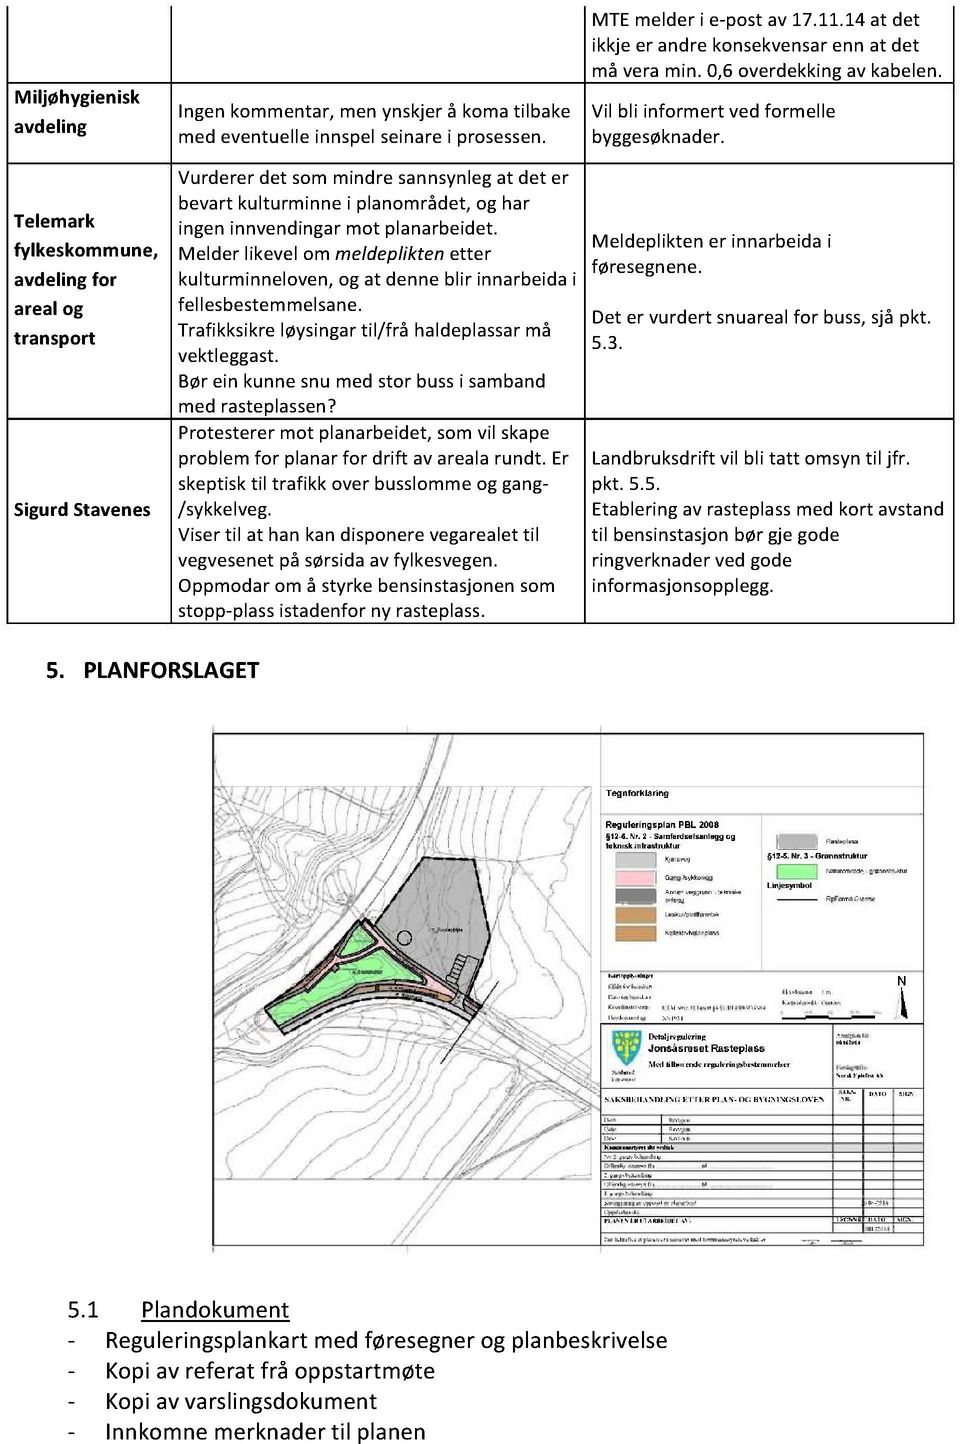 Telemark fylkeskommune, avdelingfor areal og transport SigurdStavenes Vurdererdet sommindresannsynlegat det er bevartkulturminnei planområdet,og har ingeninnvendingarmot planarbeidet.